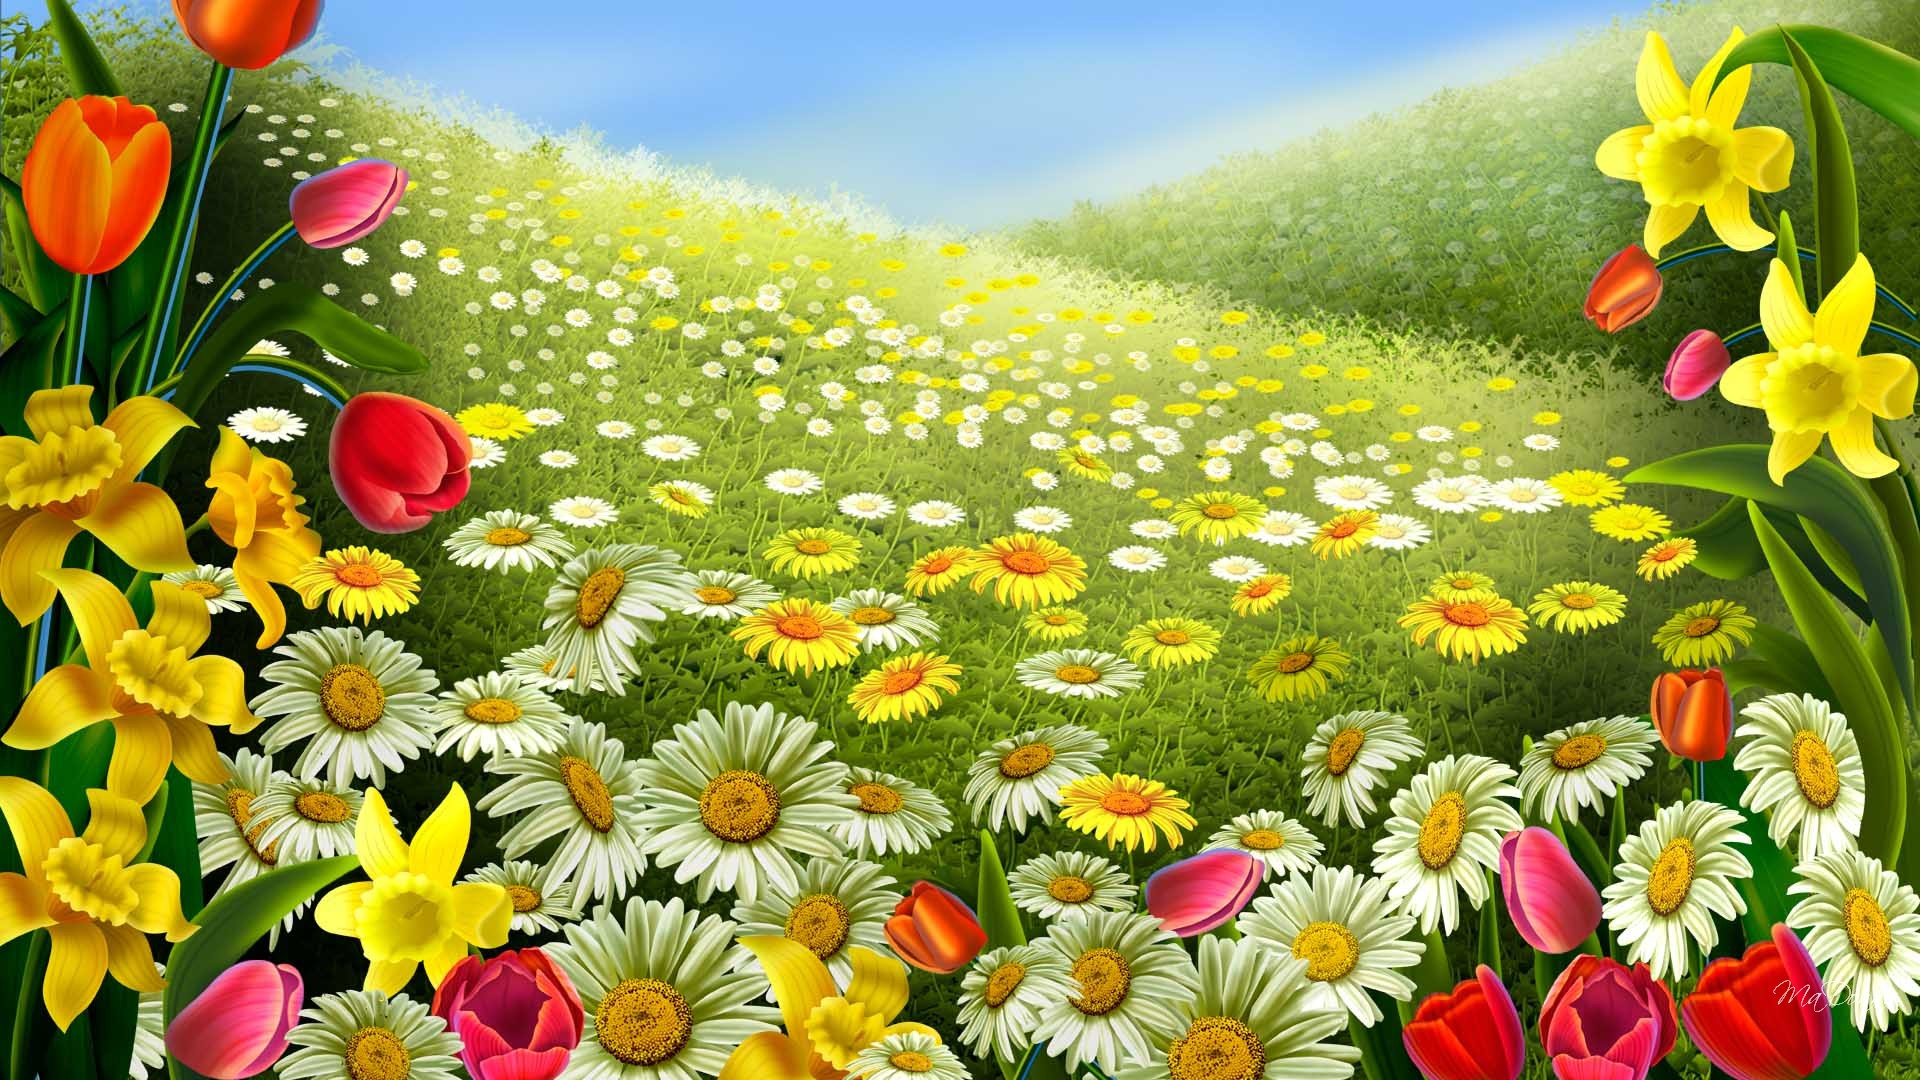 Free Desktop Wallpaper Spring   Desktop Backgrounds